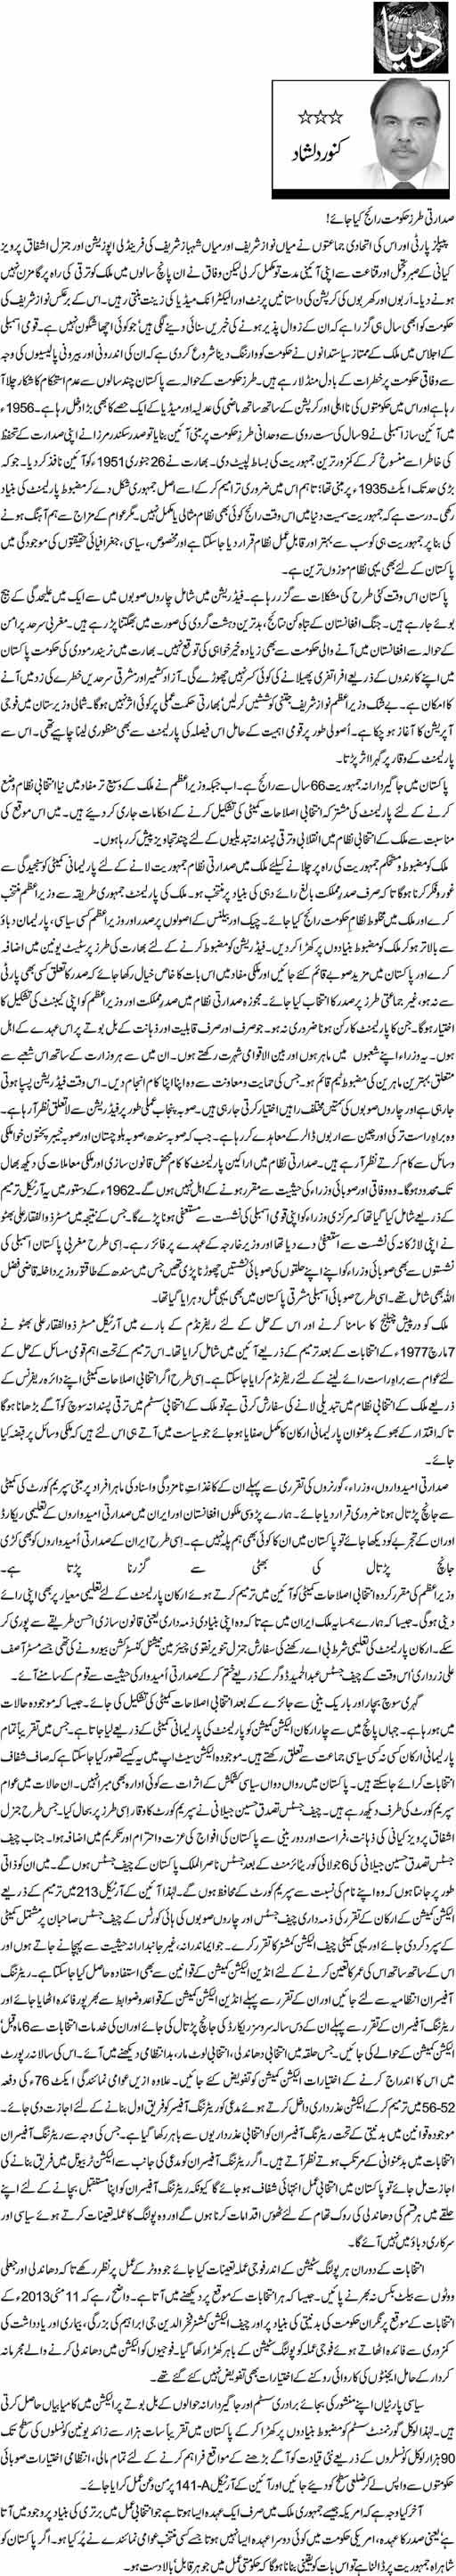 Print Media Coverage Daily Dunya - Kanwar Dilshad